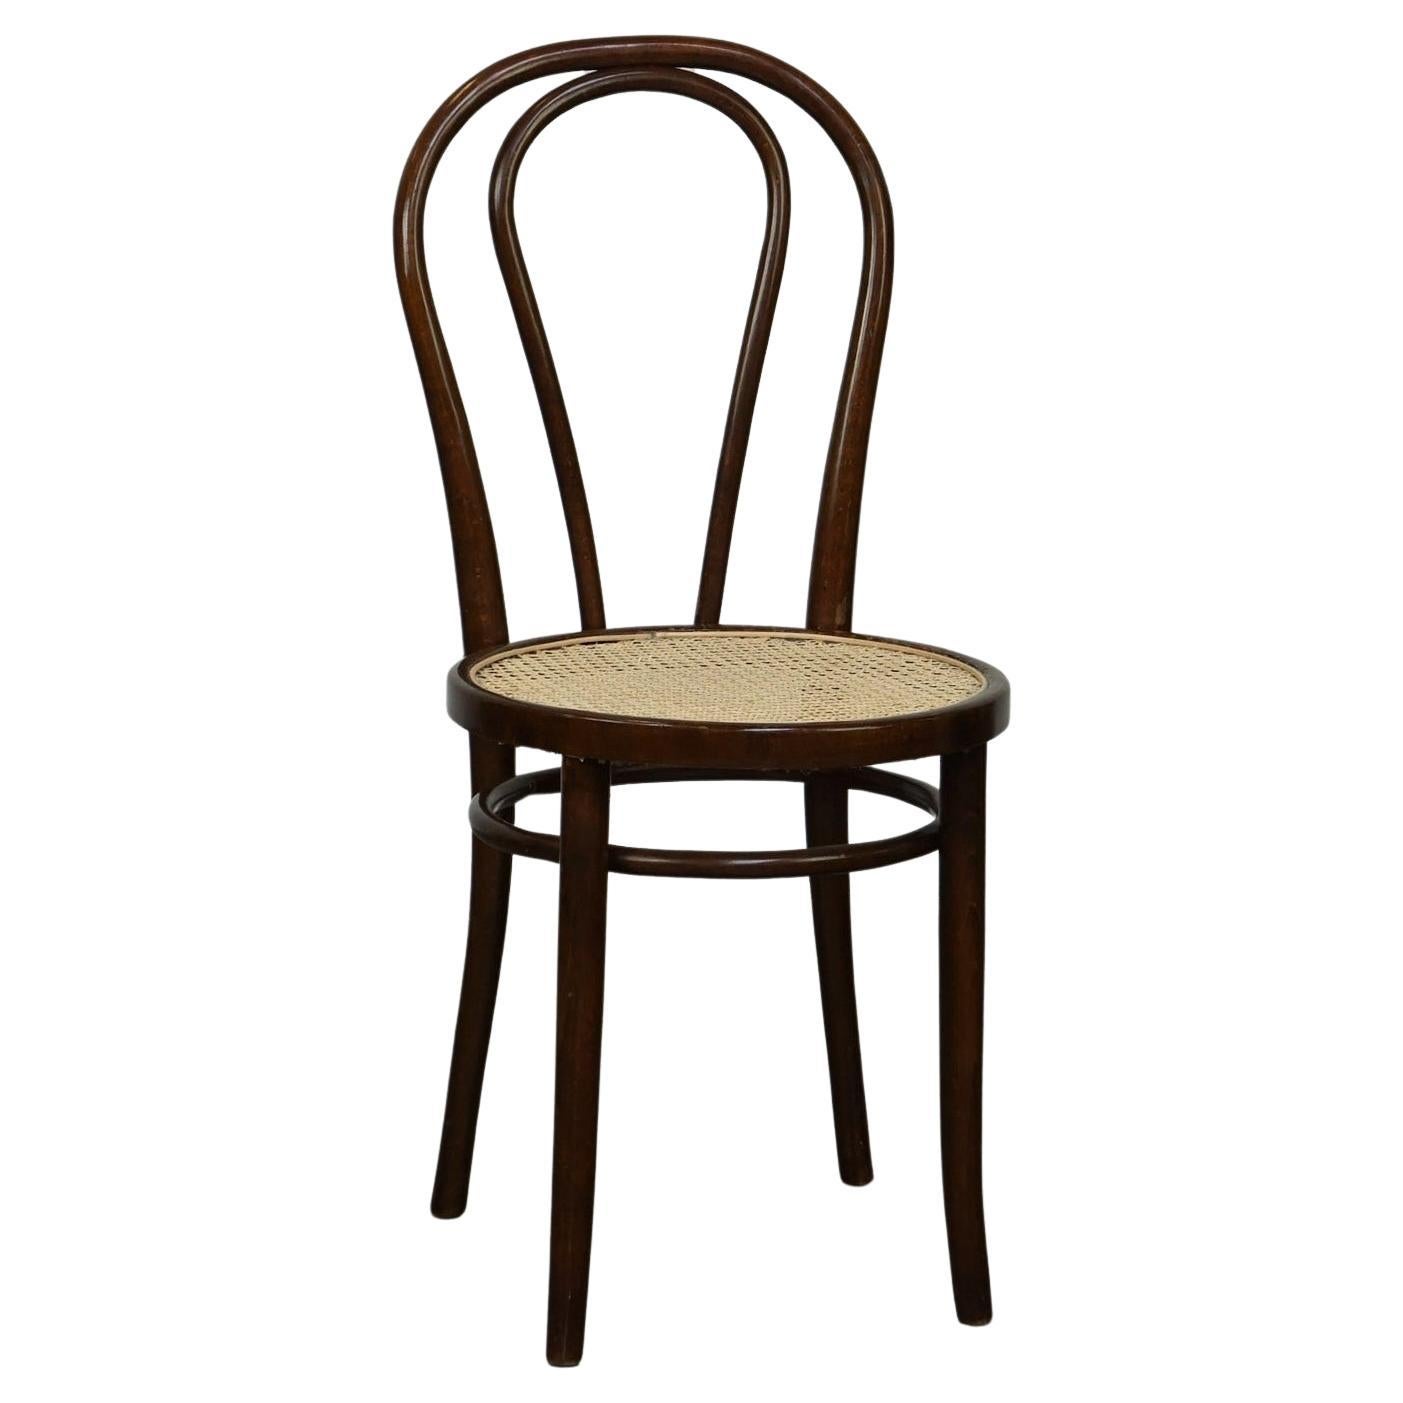 Originaler antiker Thonet-Stuhl aus gebogenem Holz, Modell Nr. 18, mit neuem geflochtenem Sitz im Angebot